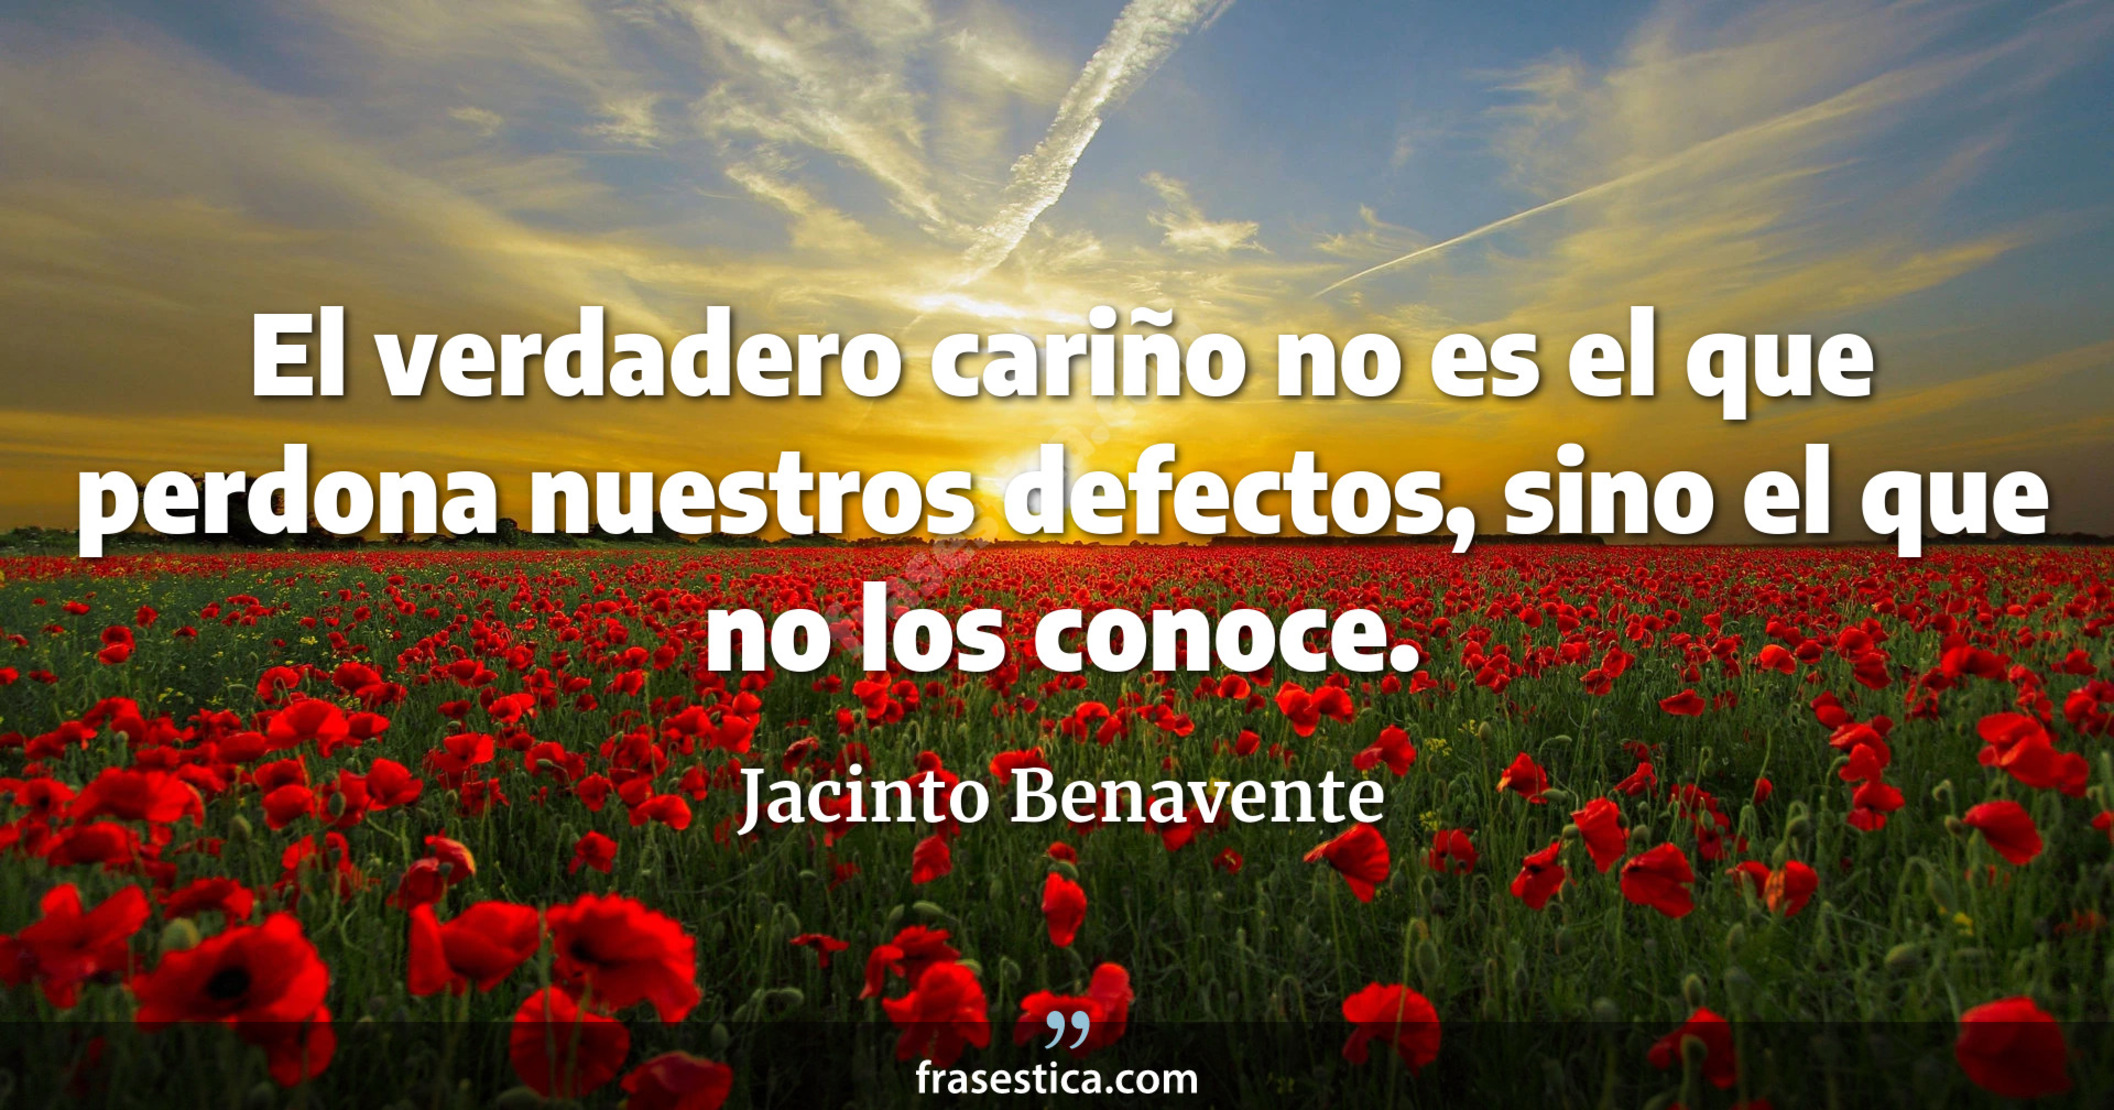 El verdadero cariño no es el que perdona nuestros defectos, sino el que no los conoce. - Jacinto Benavente